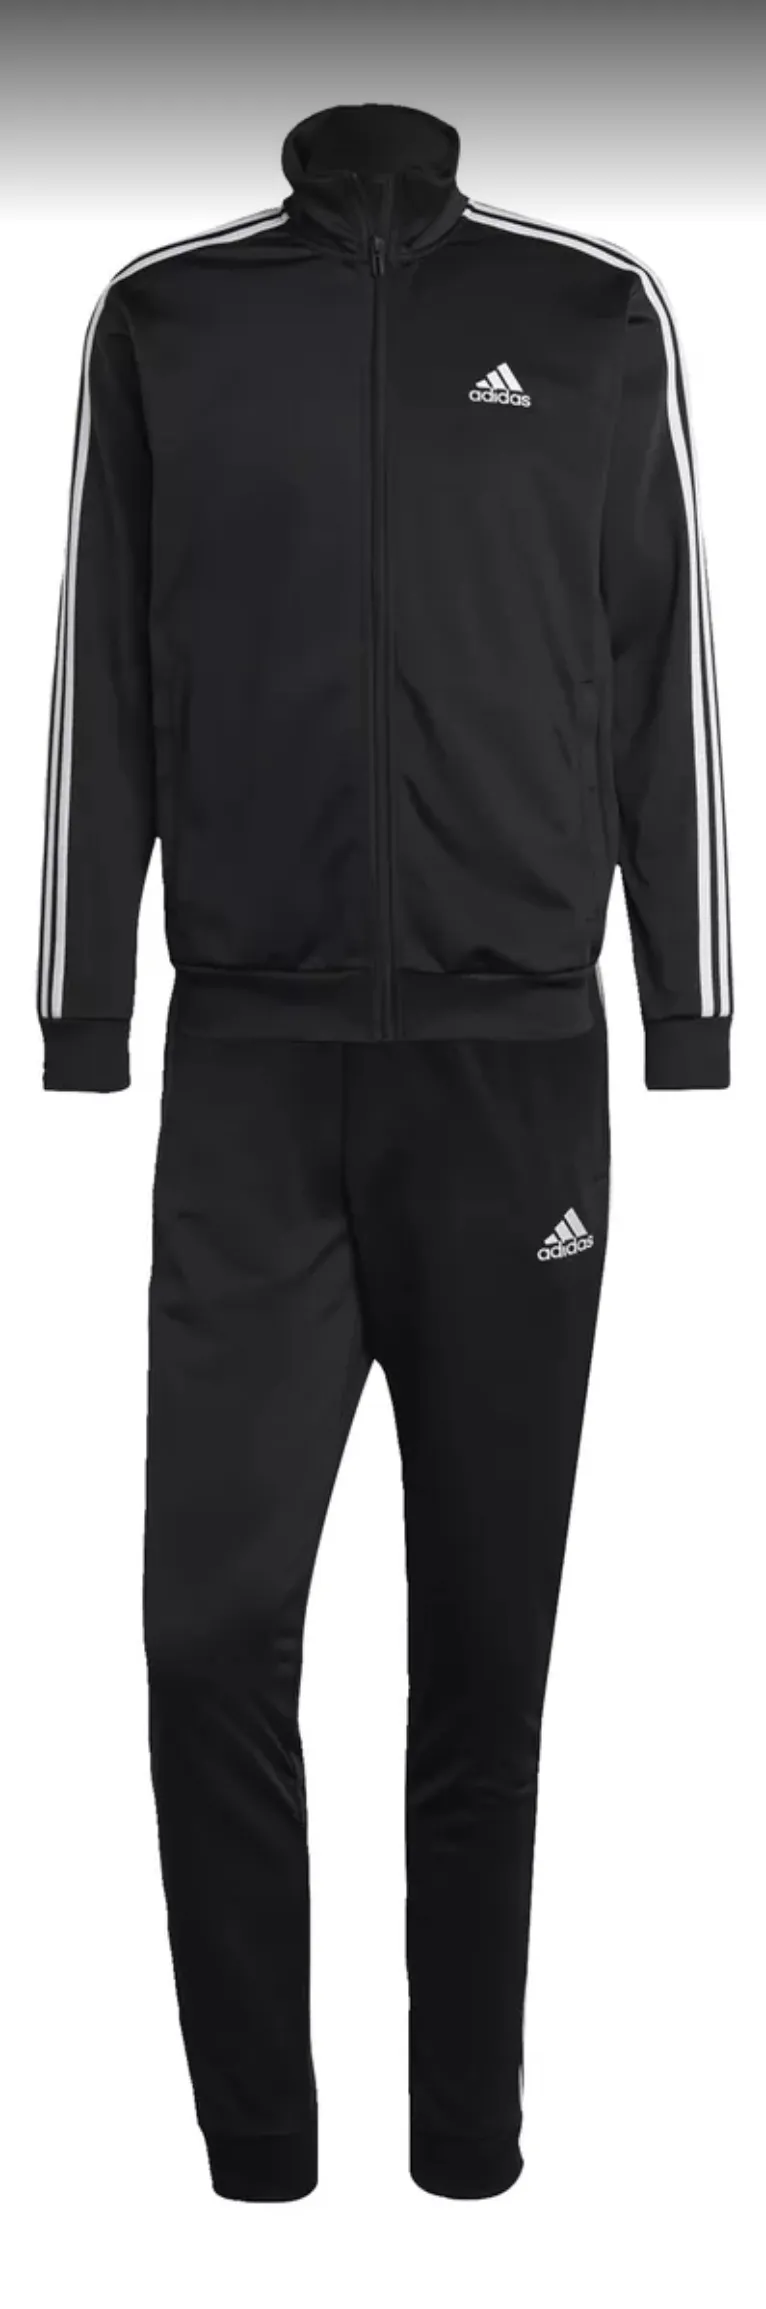 Adidas Sportswear Basic 3-Stripes Tricot Adidas - Gg